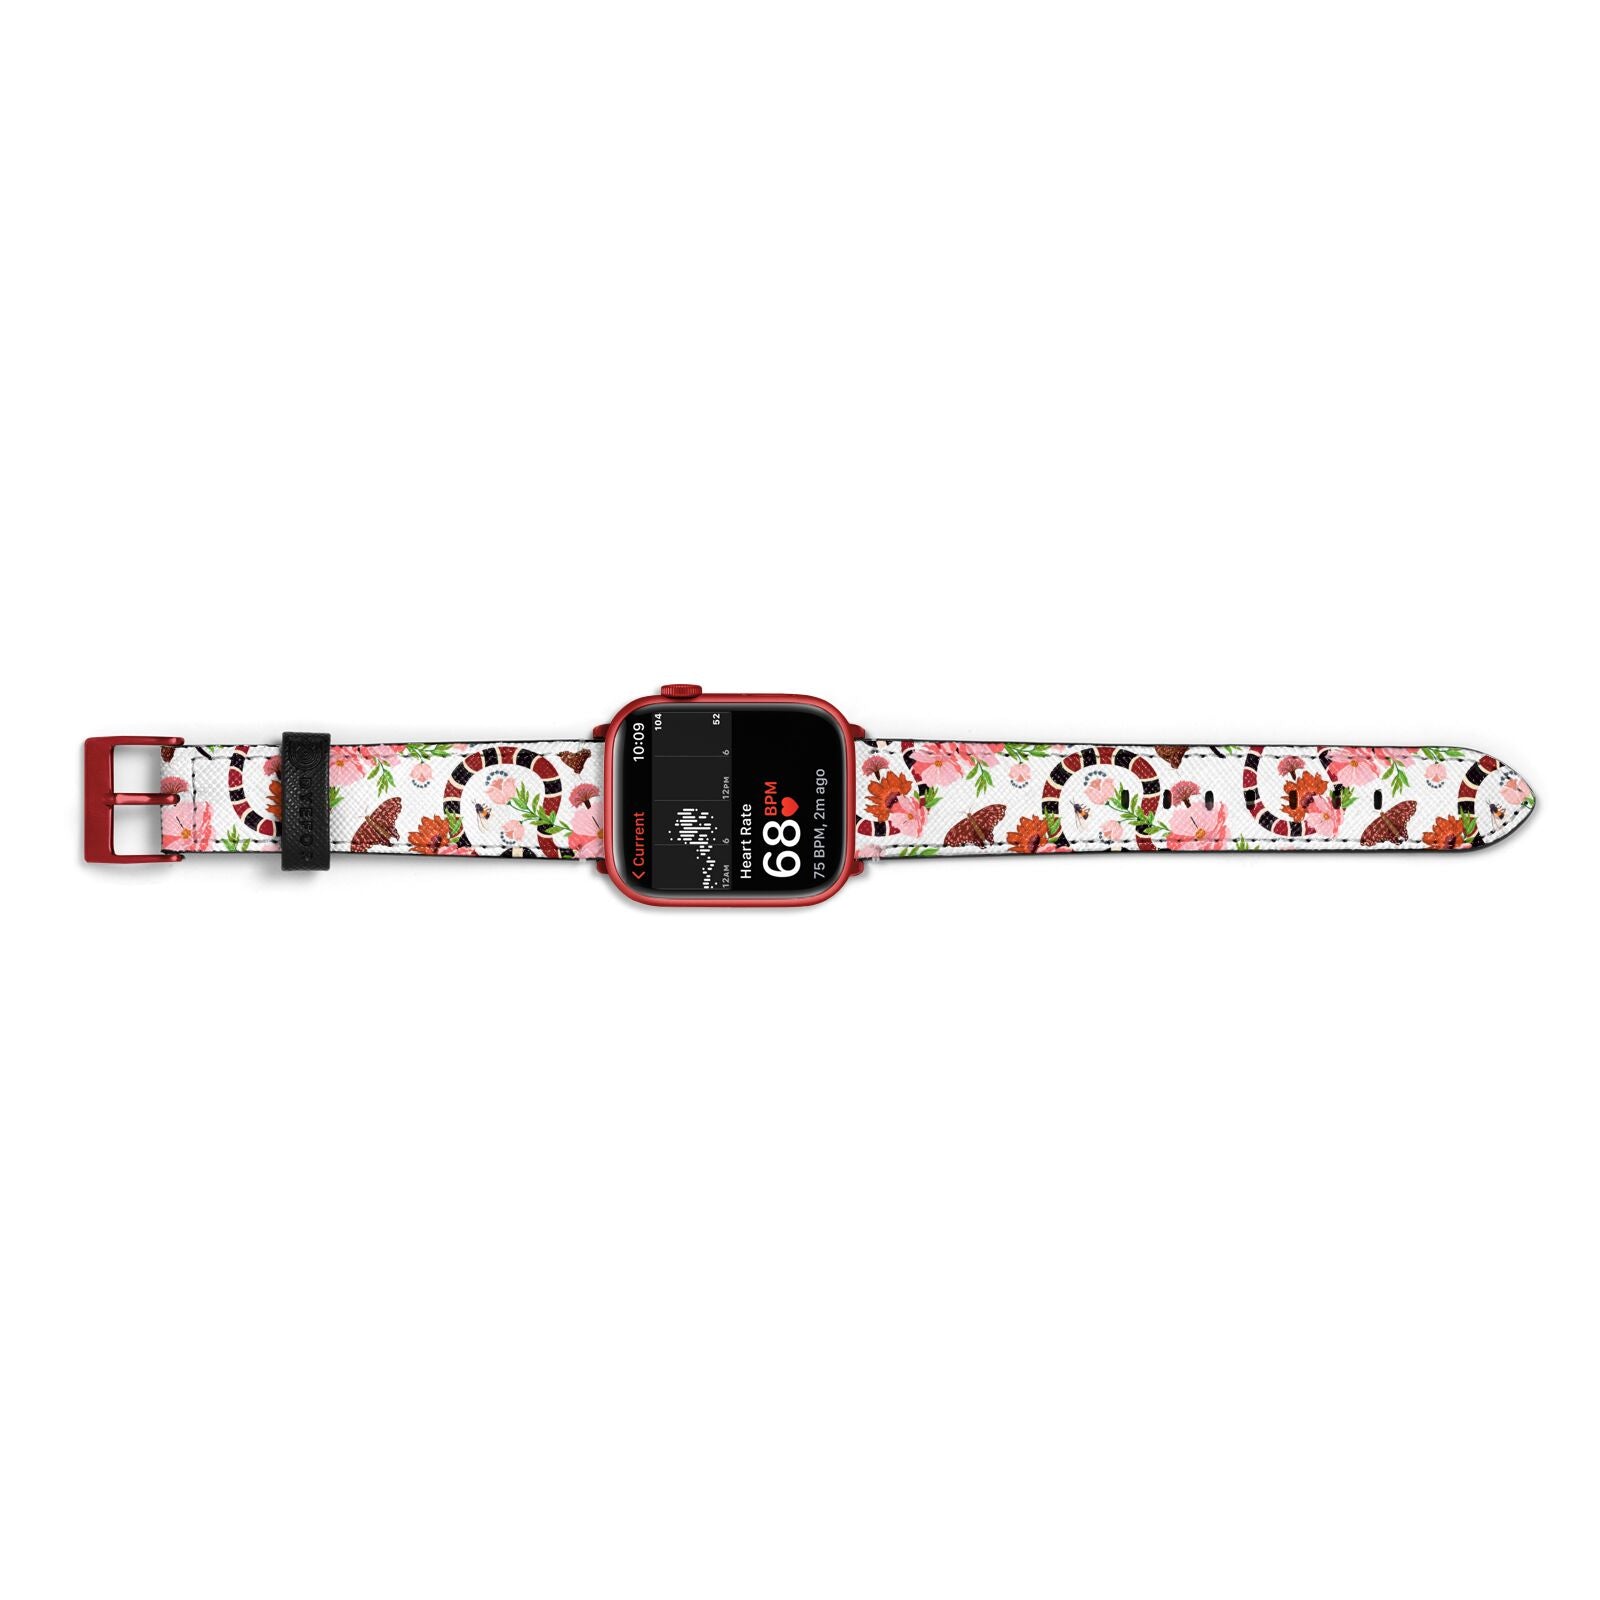 Floral Snake Apple Watch Strap Size 38mm Landscape Image Red Hardware